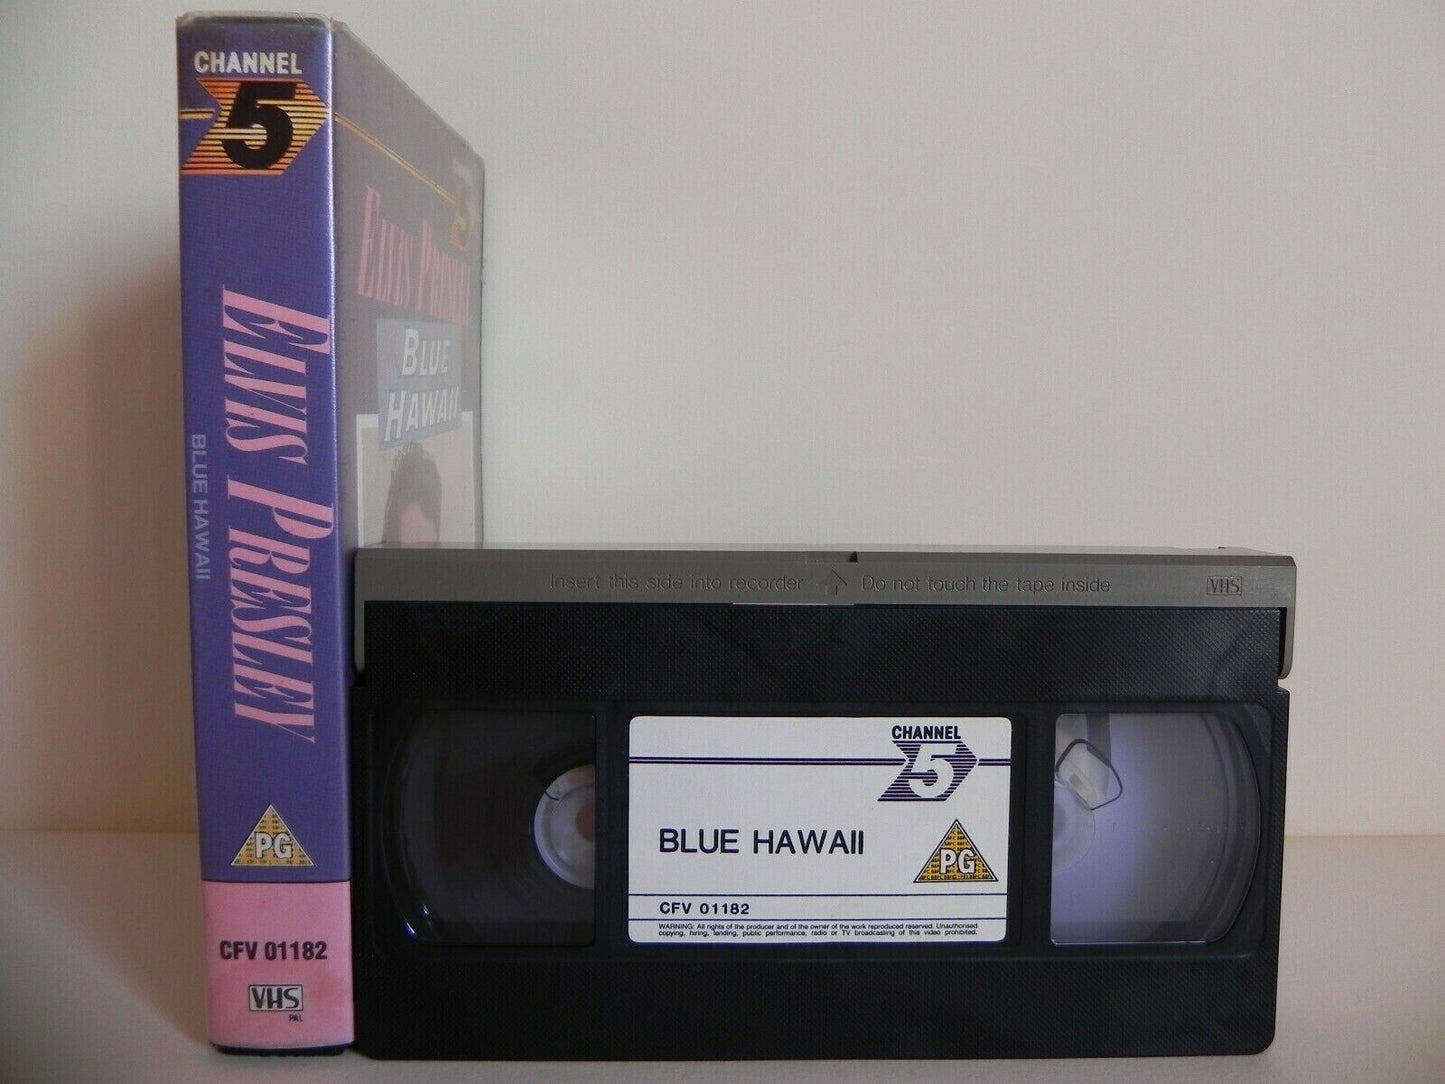 Elvis Presley: Blue Hawaii - Channel 5 - Joan Blackman - Nancy Walters - Pal VHS-